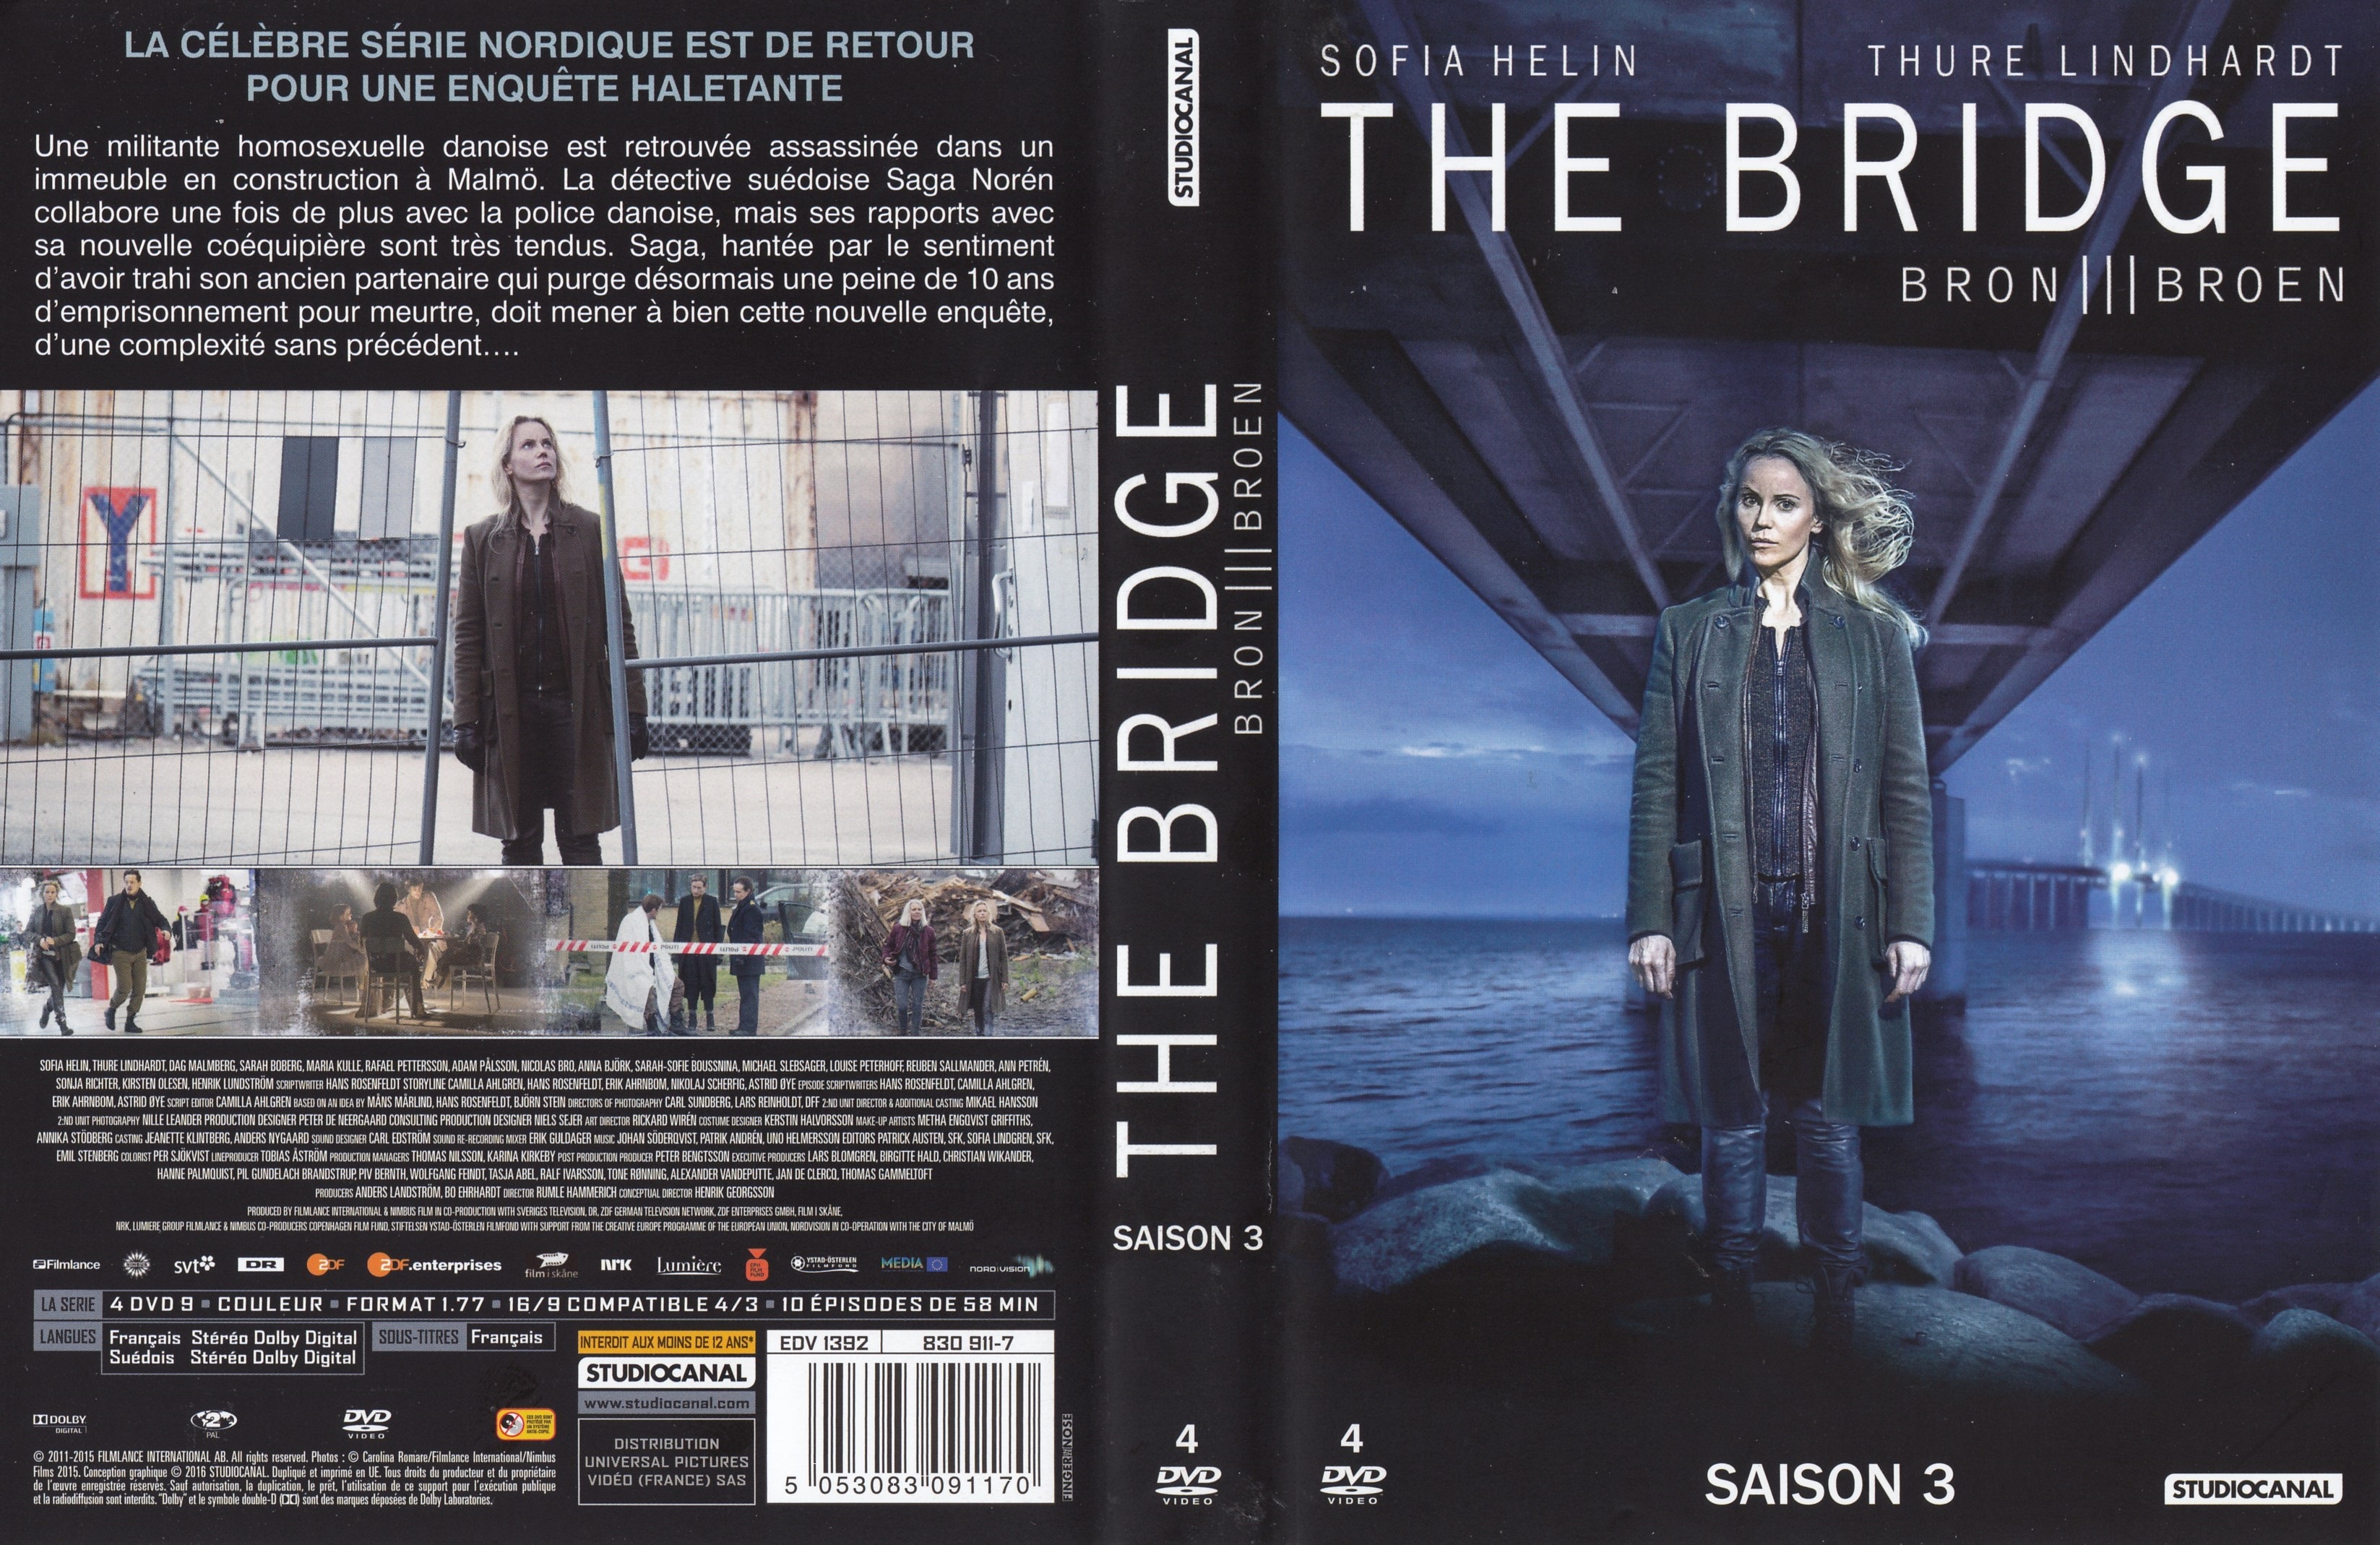 Jaquette DVD The bridge Saison 3